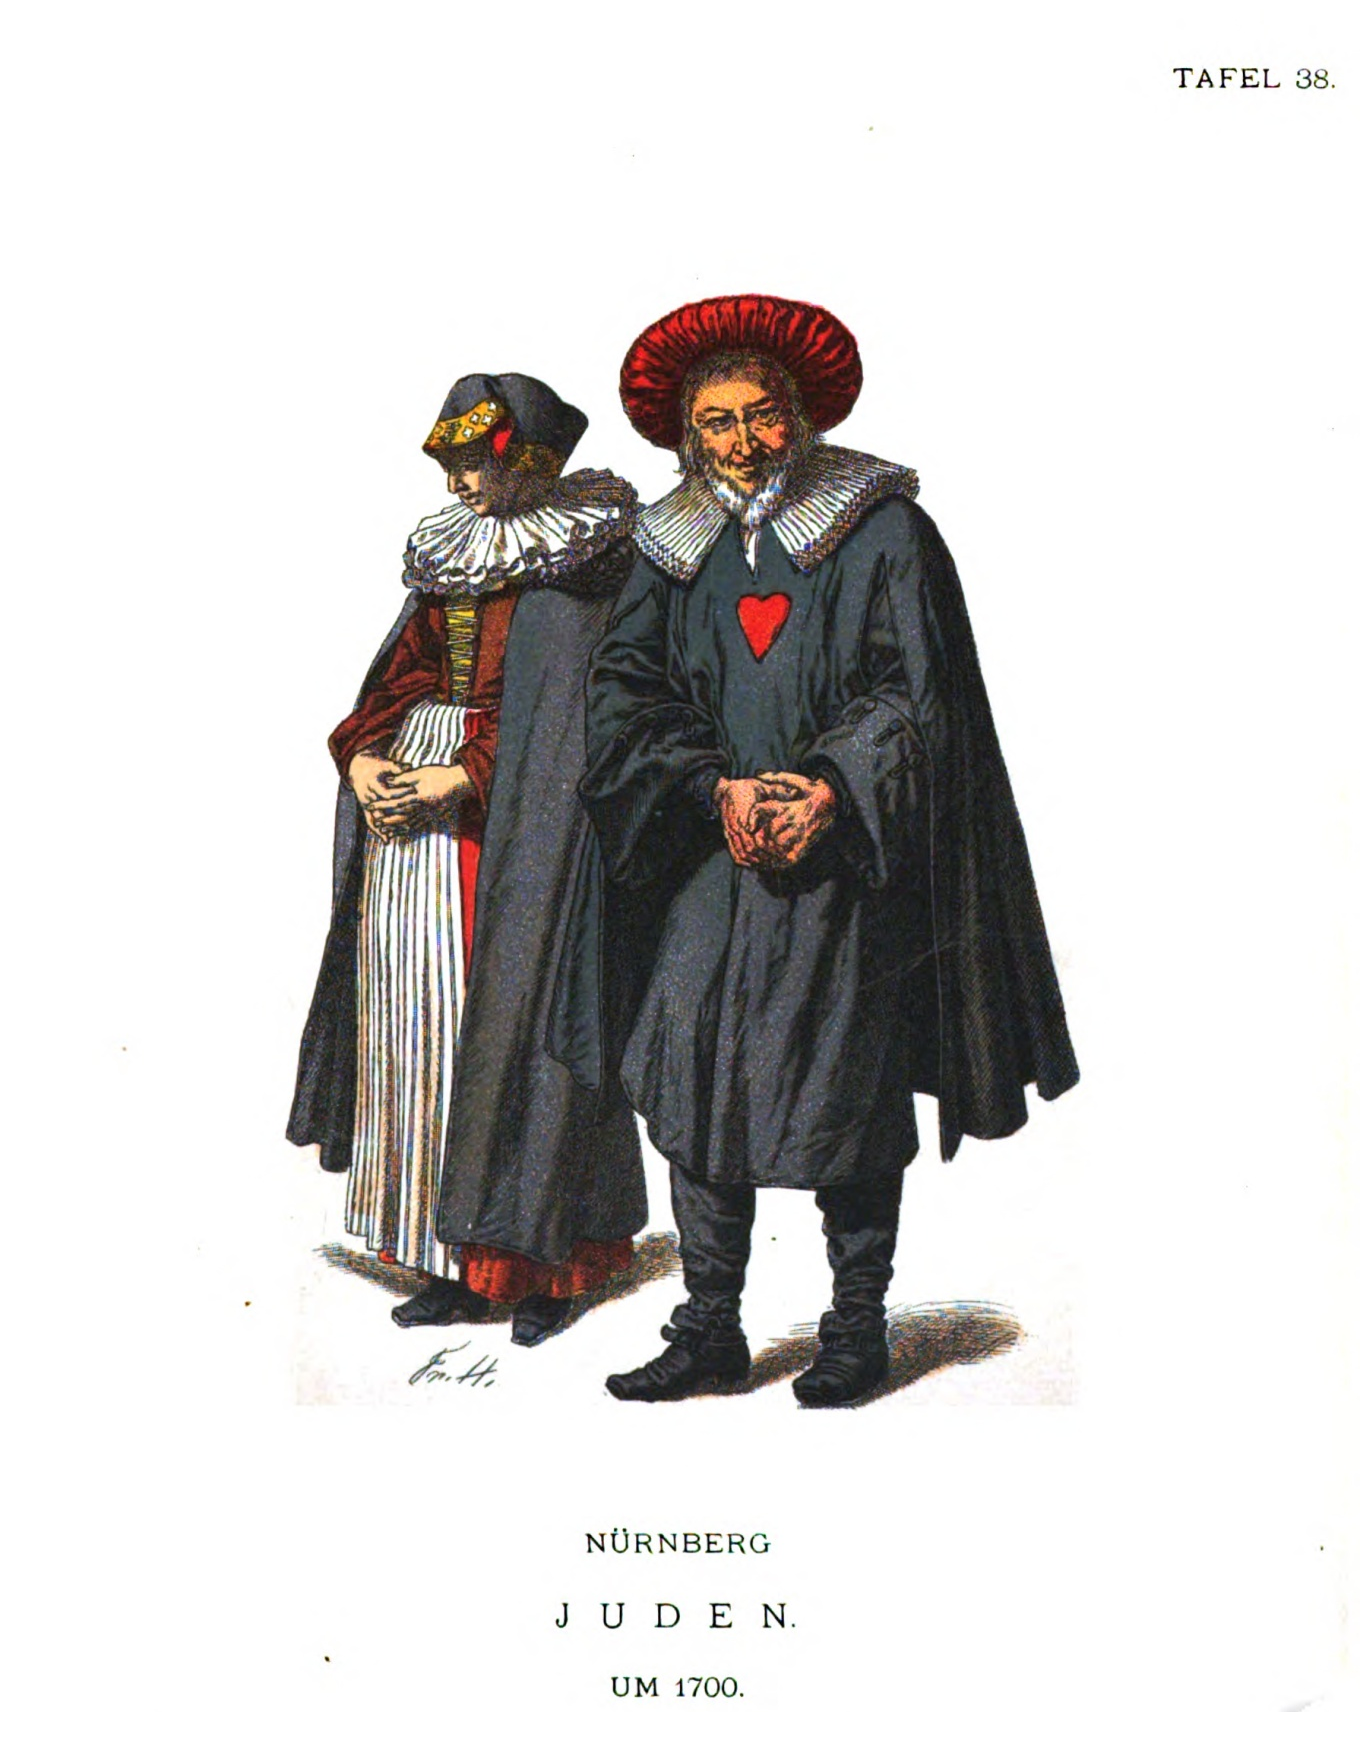 1703 colored illustration of Nuremberg Jews